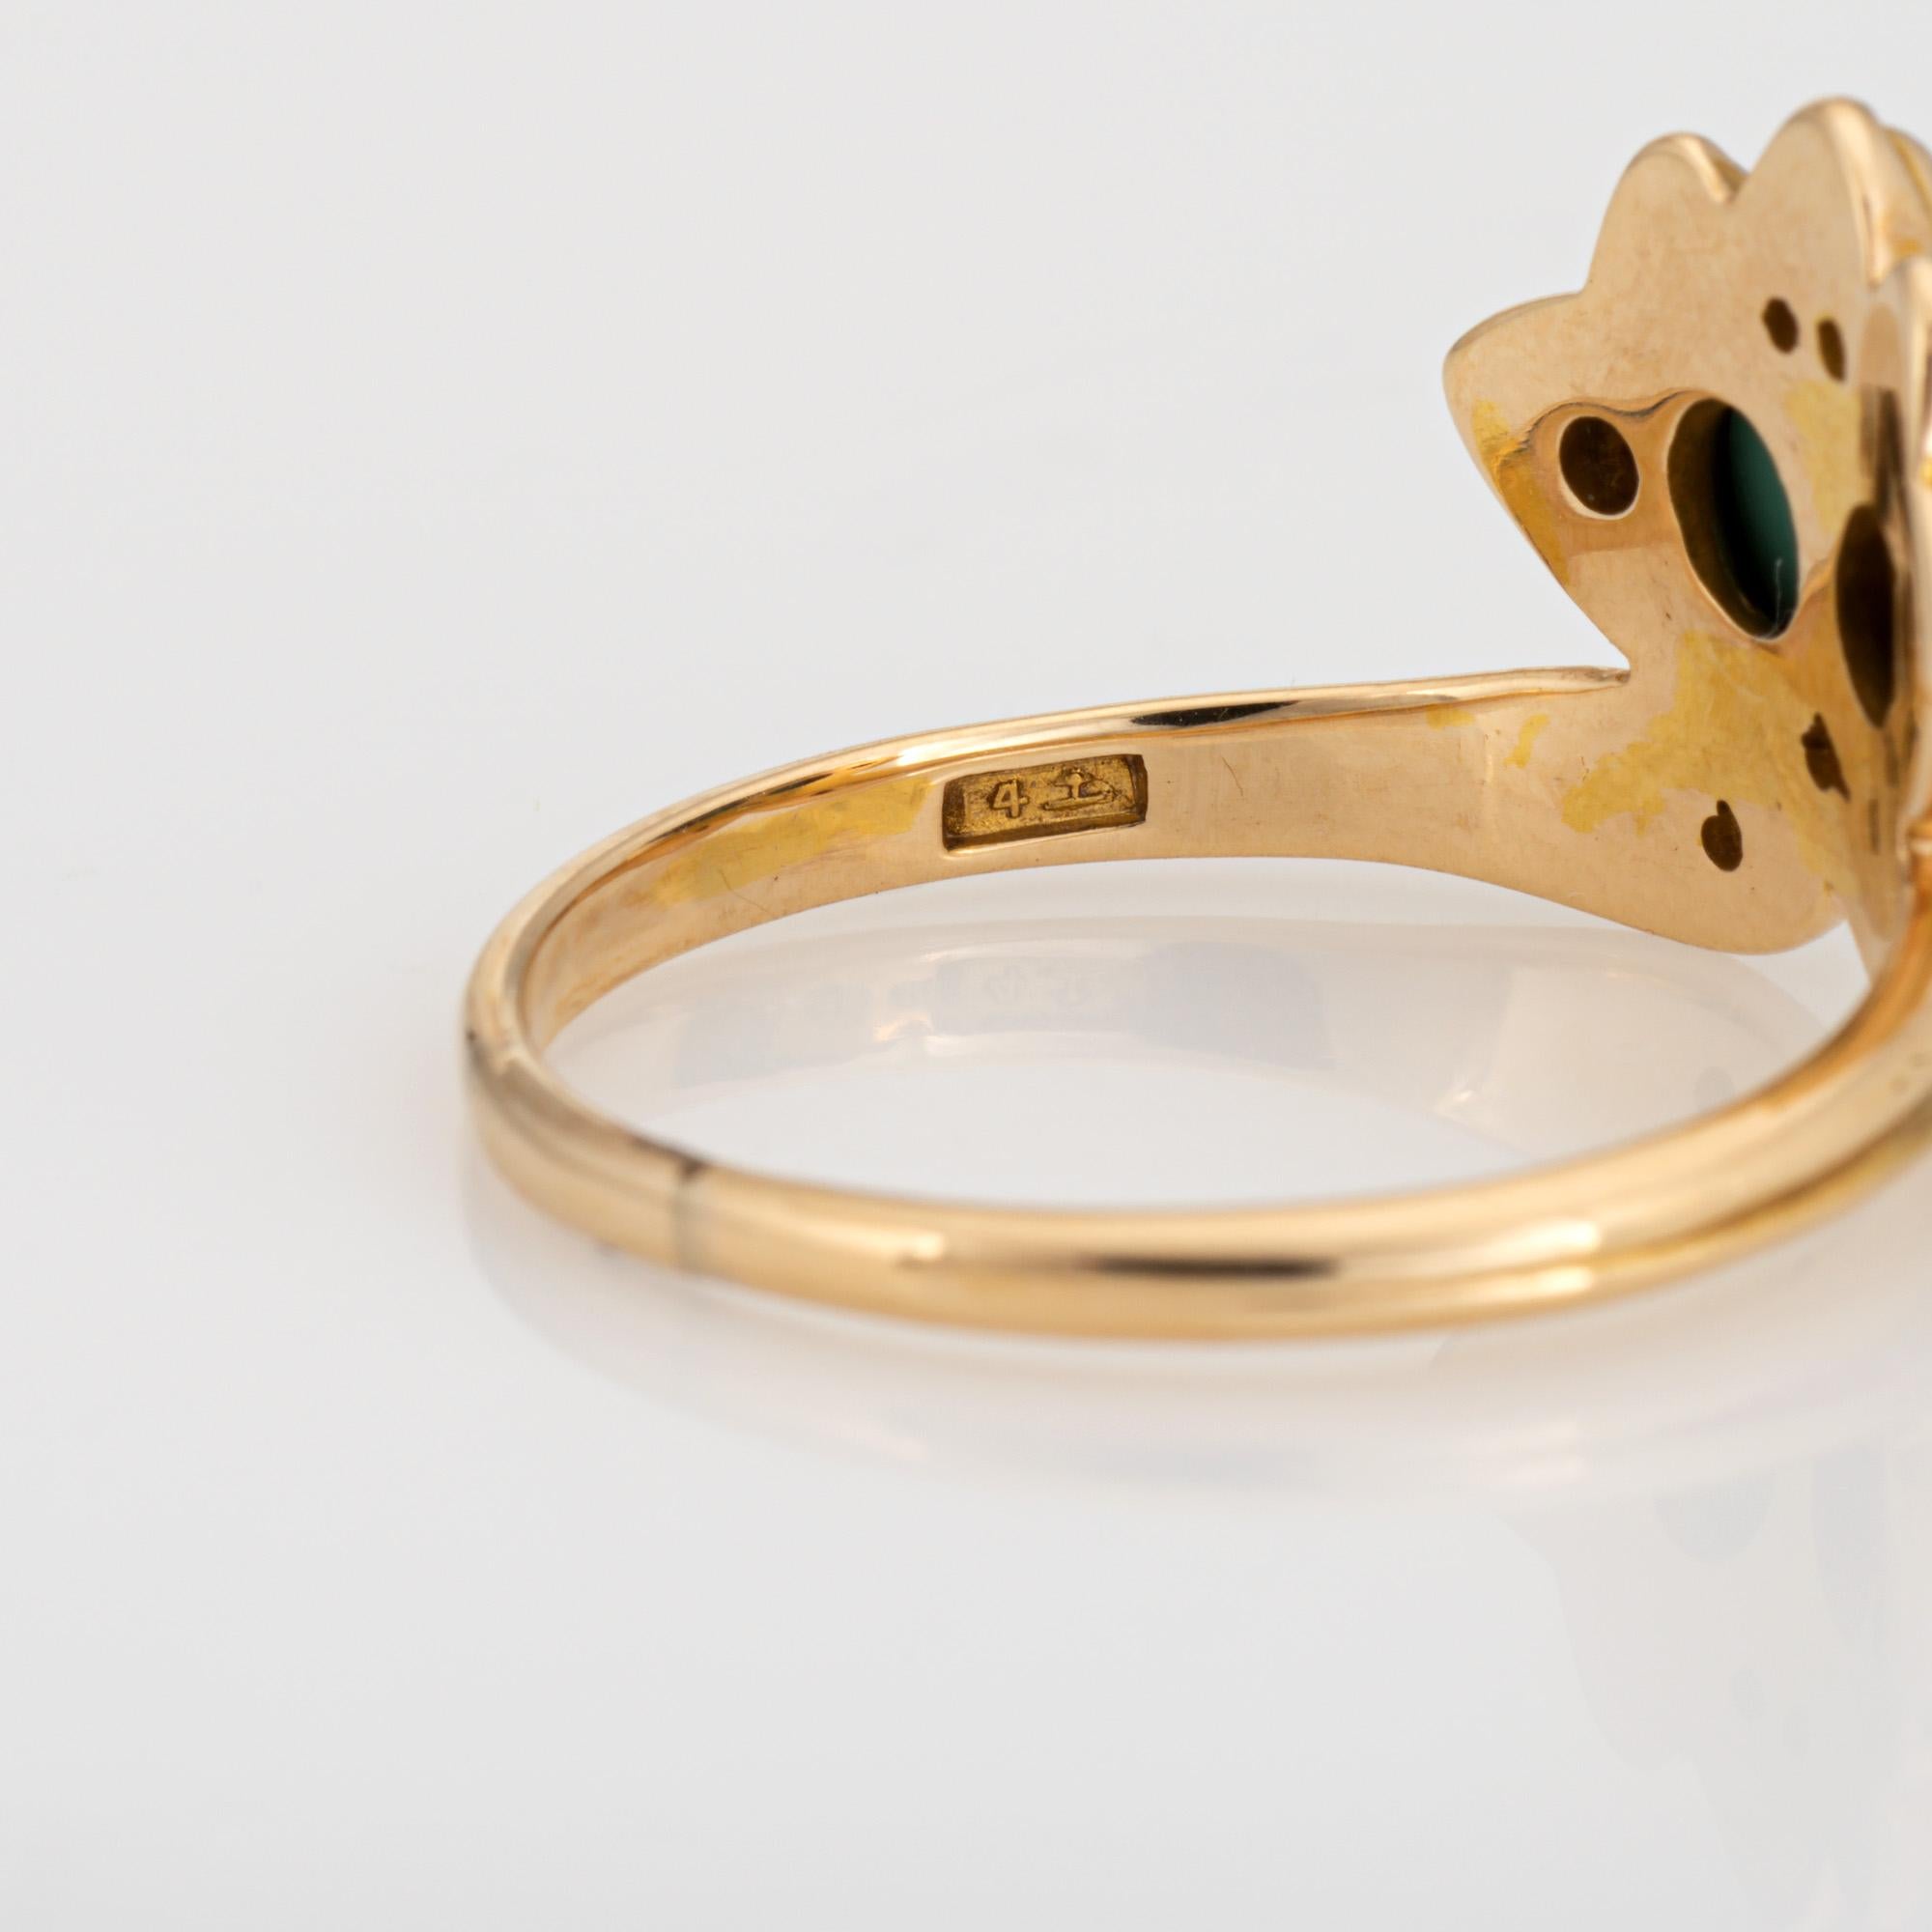 Antique Art Nouveau Ring Larter & Sons Turquoise Diamond 14k Yellow Gold Sz 7.5 1